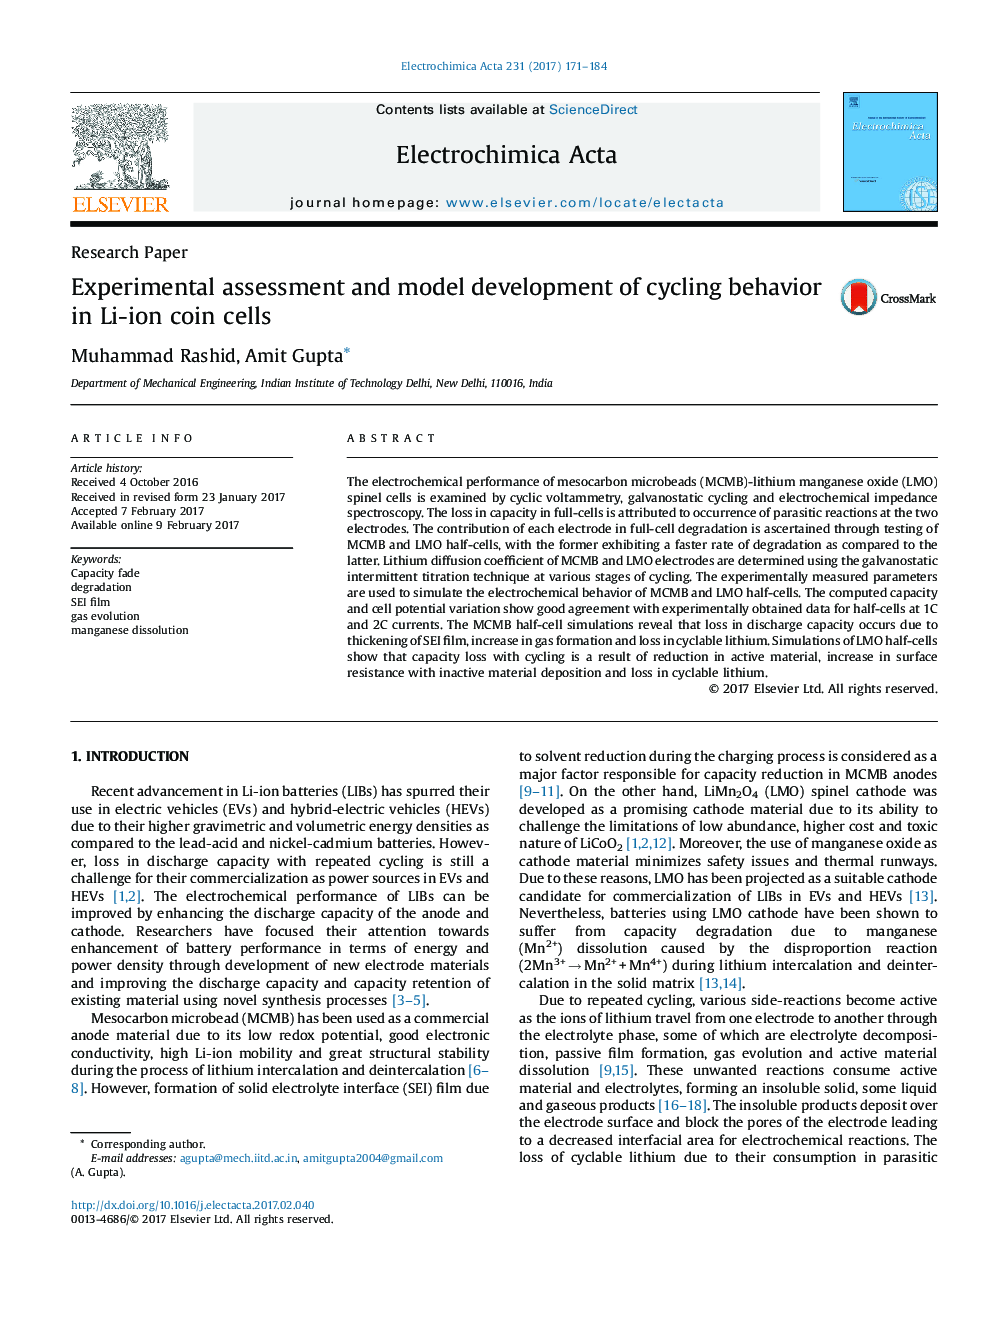 ارزیابی تجربی و توسعه مدل رفتار دوچرخه سواری در سلول های سکه ی لیتیوم